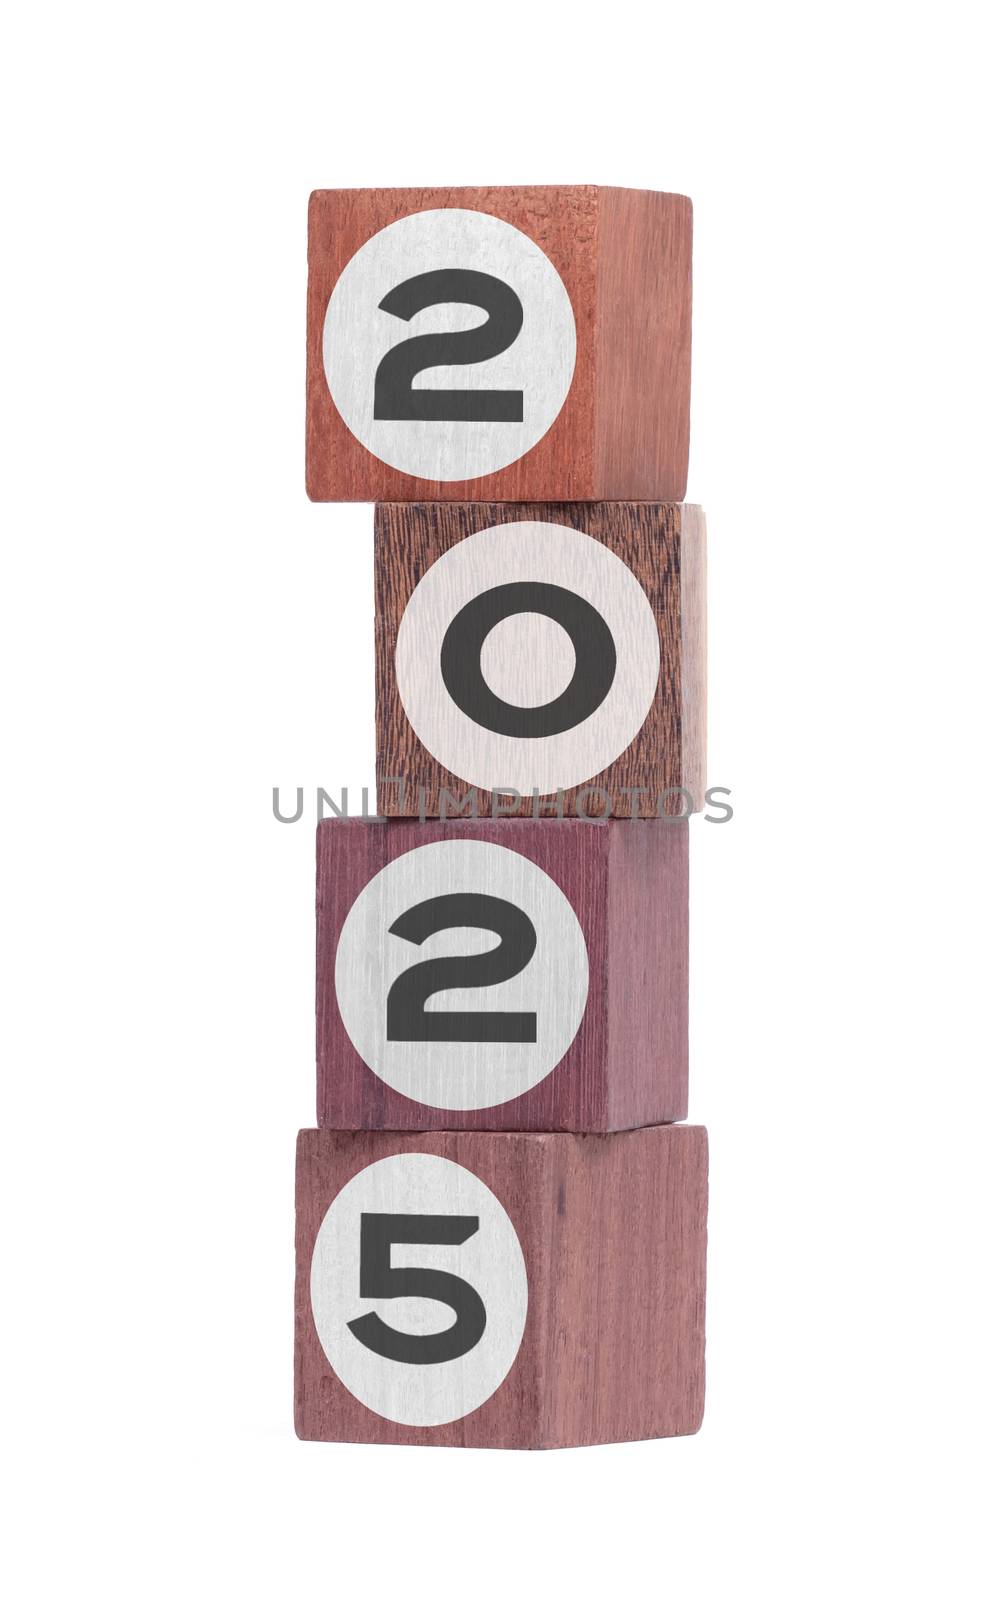 Four isolated hardwood toy blocks on white, saying 2025